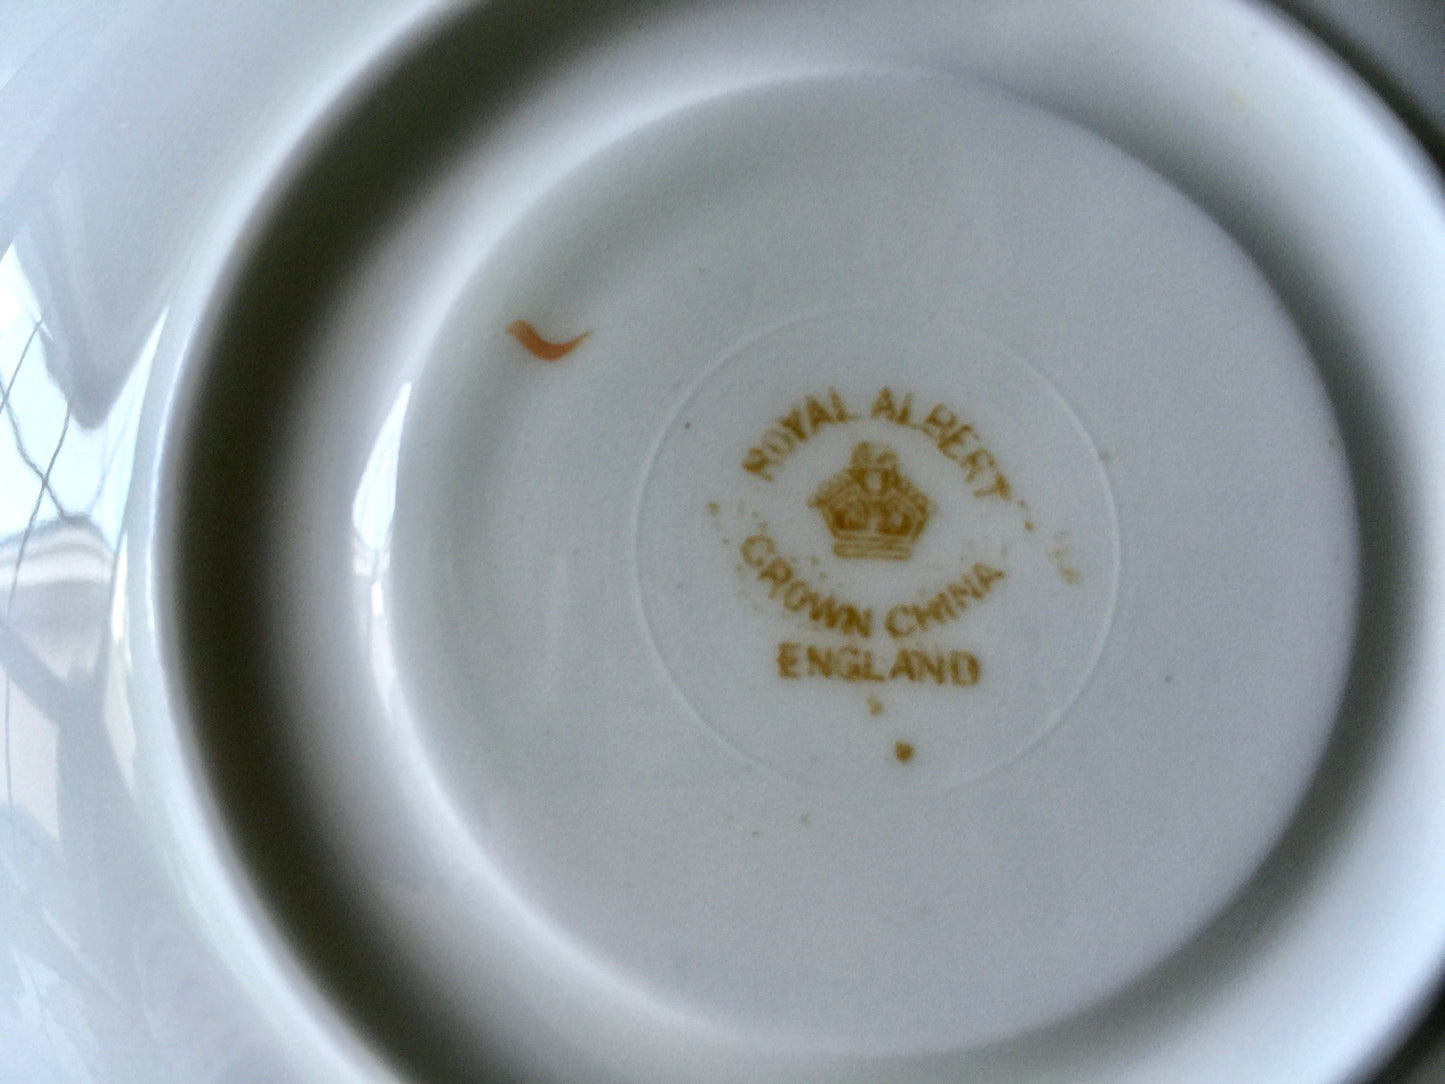 Porcelain - Royal Albert #2583 Pink Yellow Roses Teacup Saucer 1940s